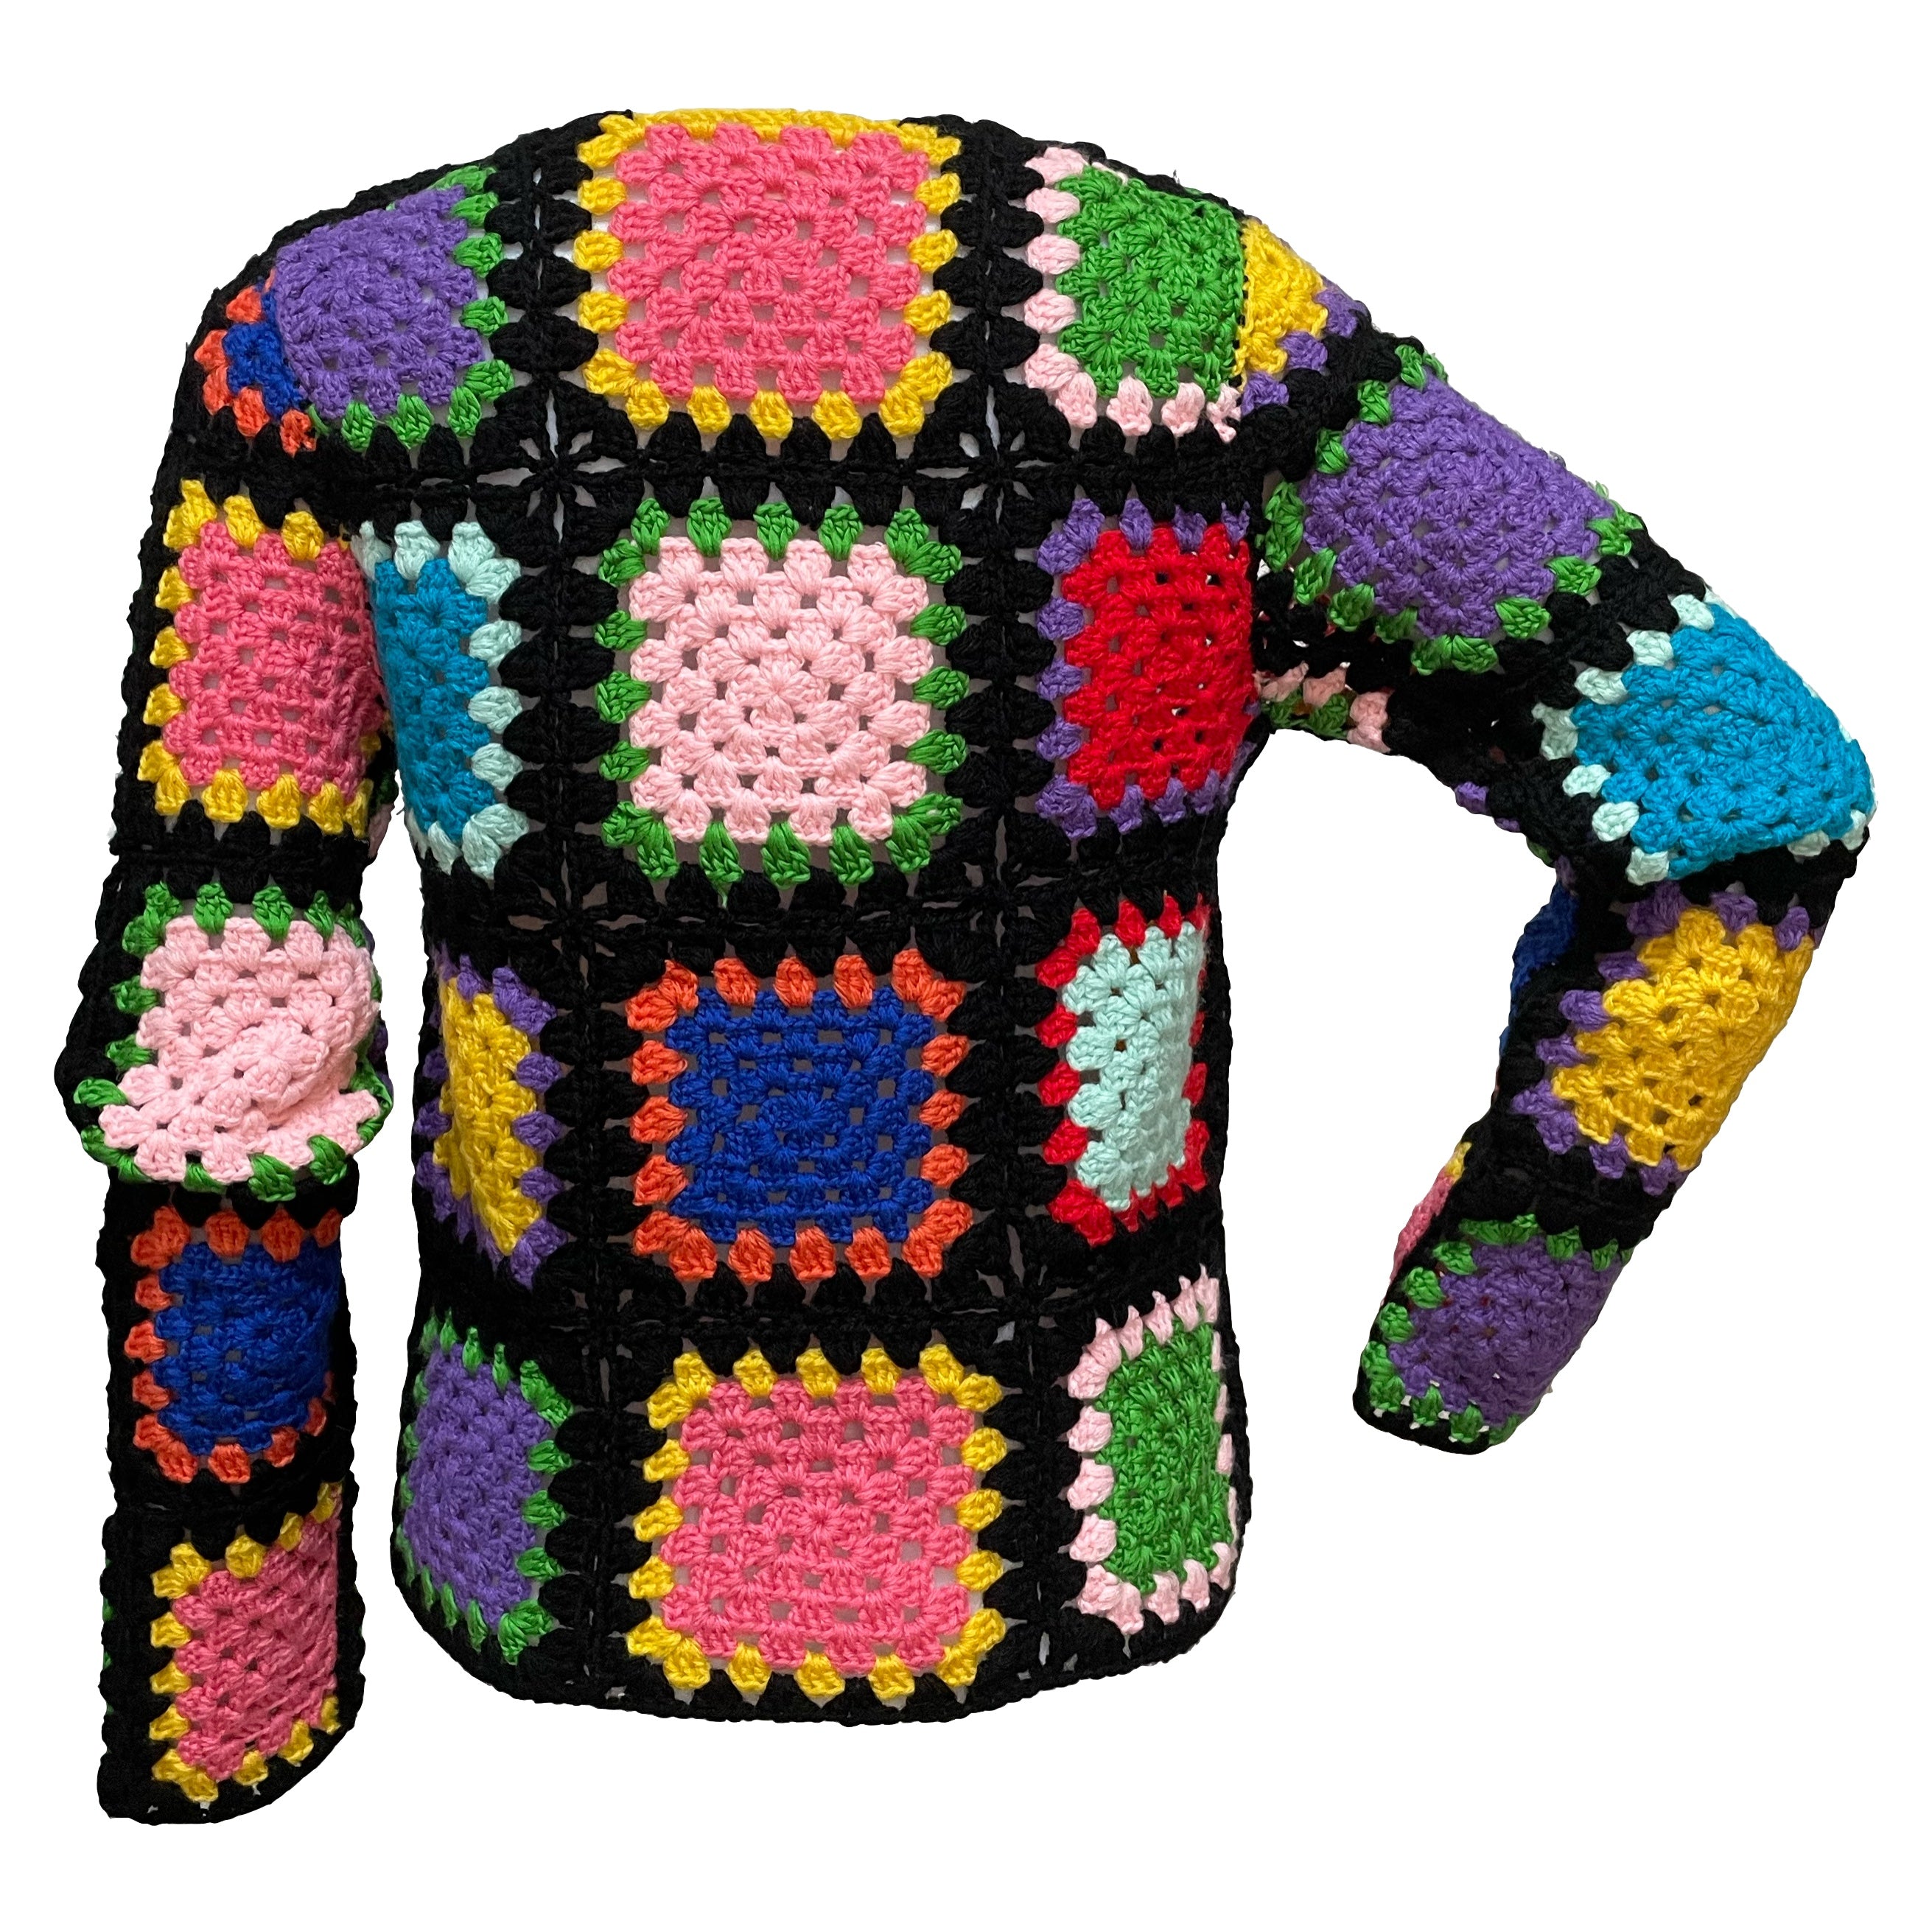 COMME DES GARCONS Patchwork Knit Sweater – 24/7 archives